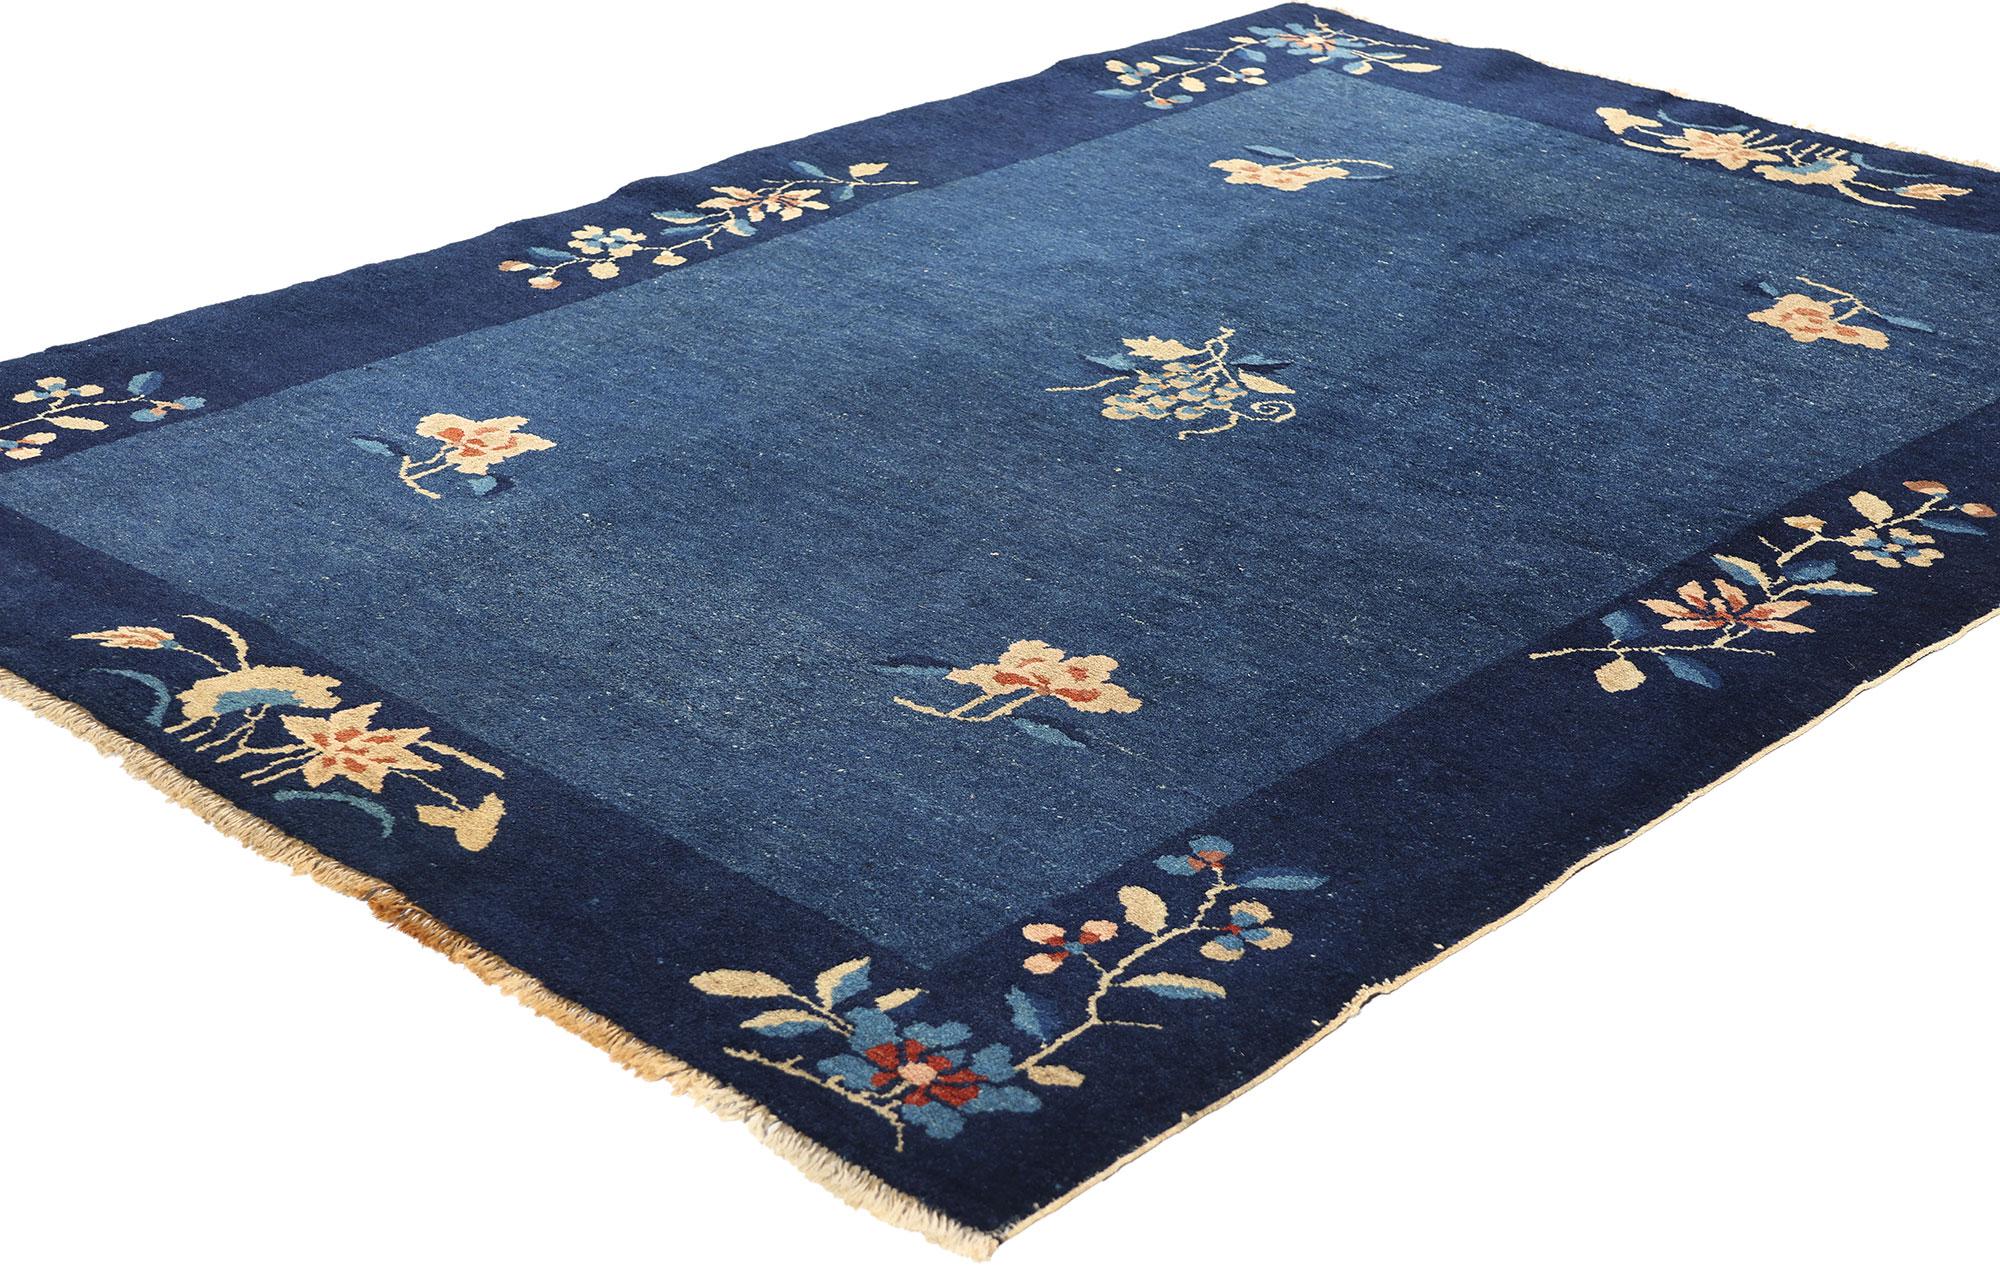 78762 Tapis chinois de Pékin bleu antique, 04'00 x 05'09. Les tapis chinois de Pékin, originaires de Beijing (anciennement appelé Pékin), en Chine, sont réputés pour leurs motifs complexes, leurs couleurs vives et leurs épais poils de laine.